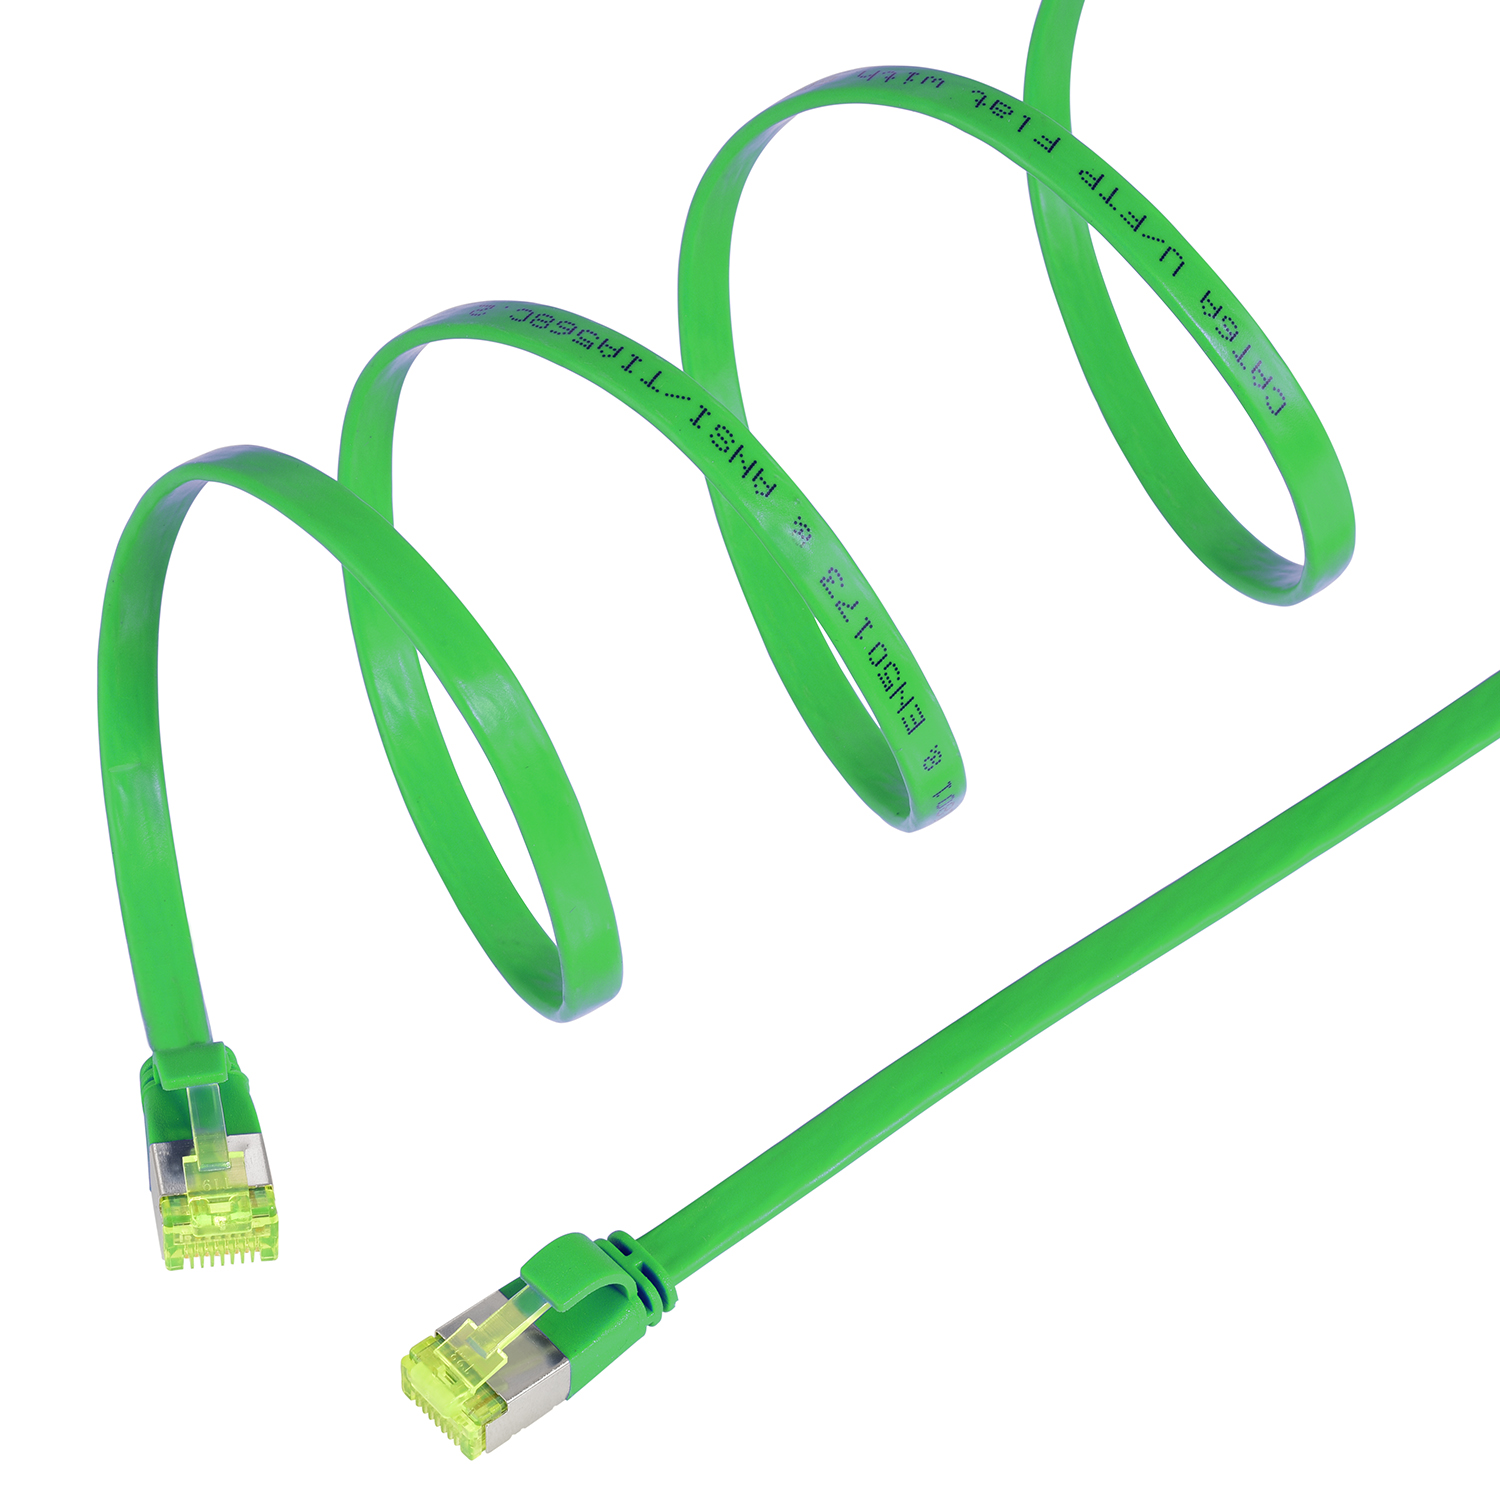 5er Netzwerkkabel, 1 m grün, 1m 10 GBit, / Patchkabel TPFNET Flachkabel Pack U/FTP